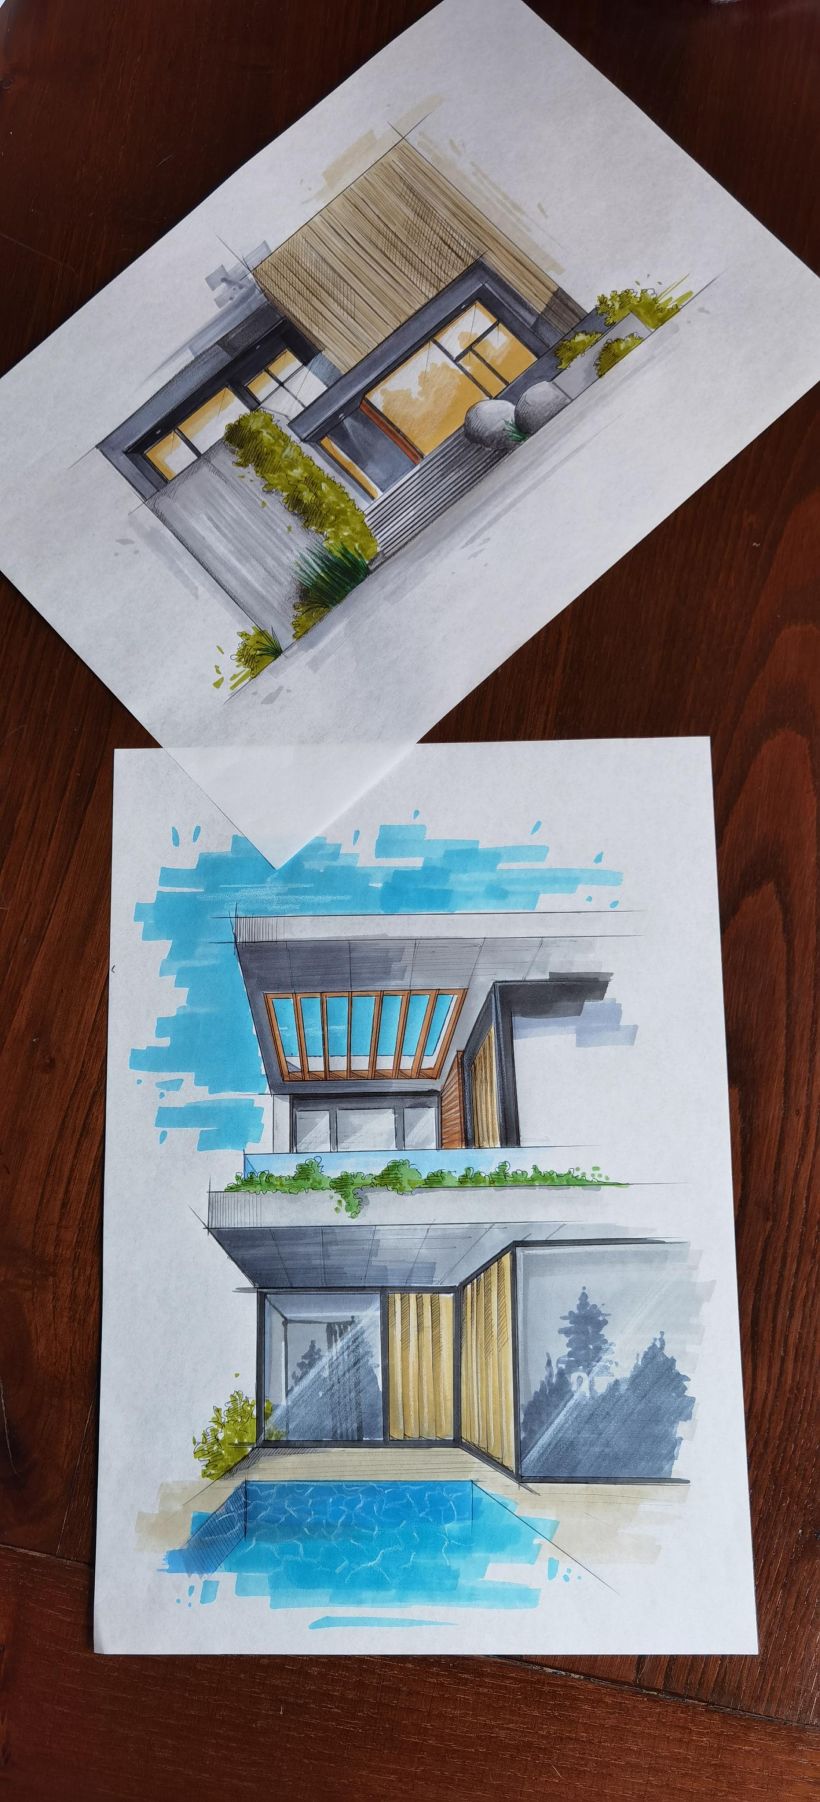 Il mio progetto del corso: Disegno architettonico espressivo con pennarelli colorati 4